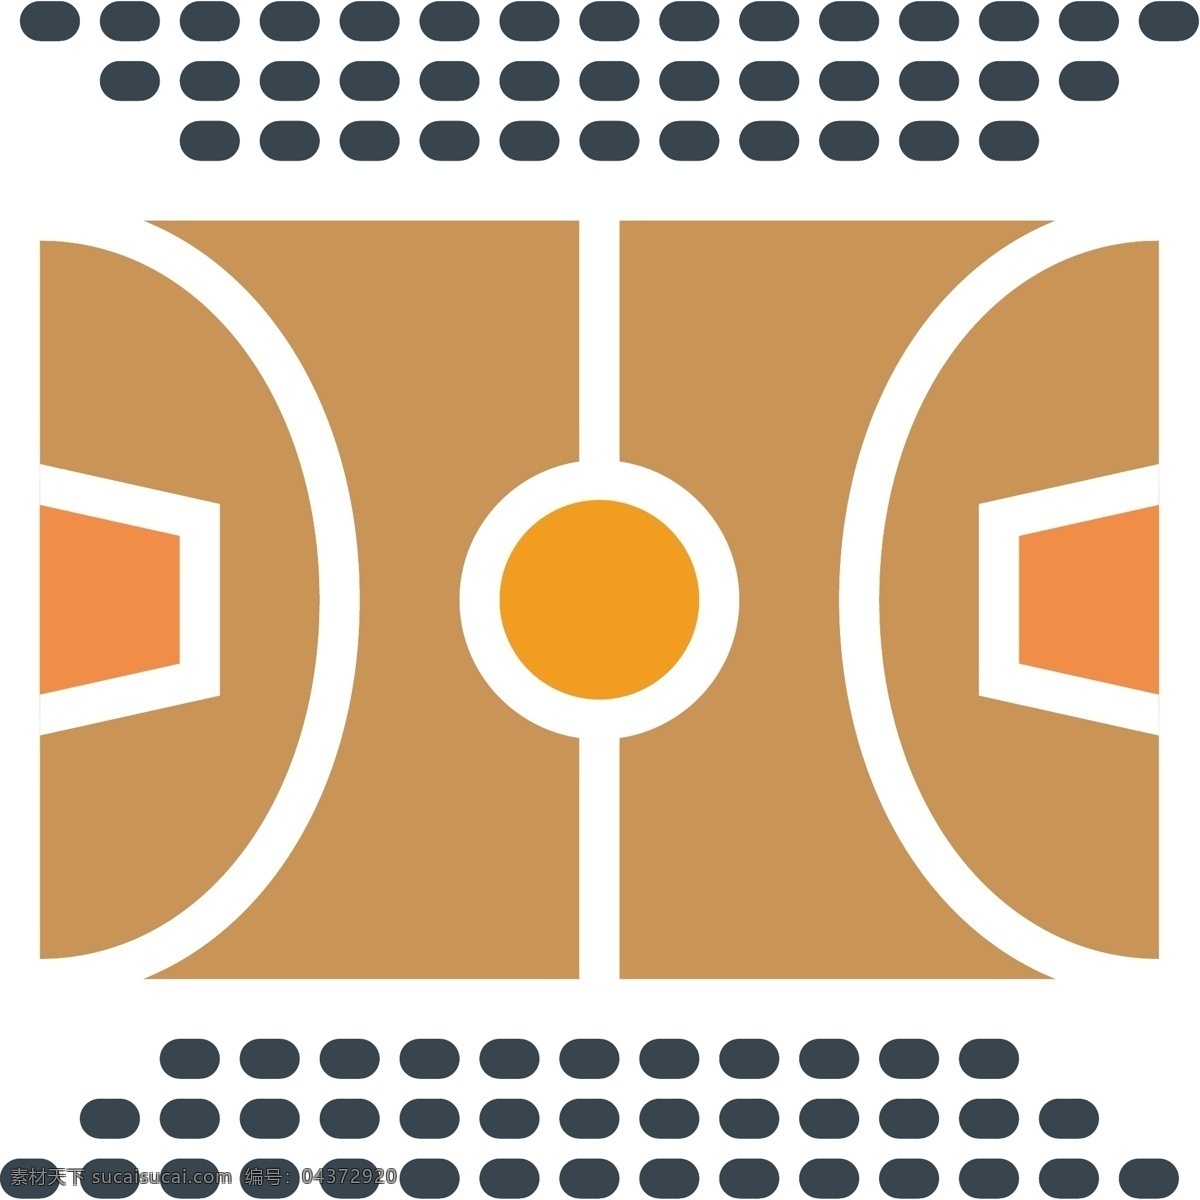 篮球场素材 篮球场 矢量篮球场 卡通篮球场 篮球场元素 篮球元素 运动 运动场地